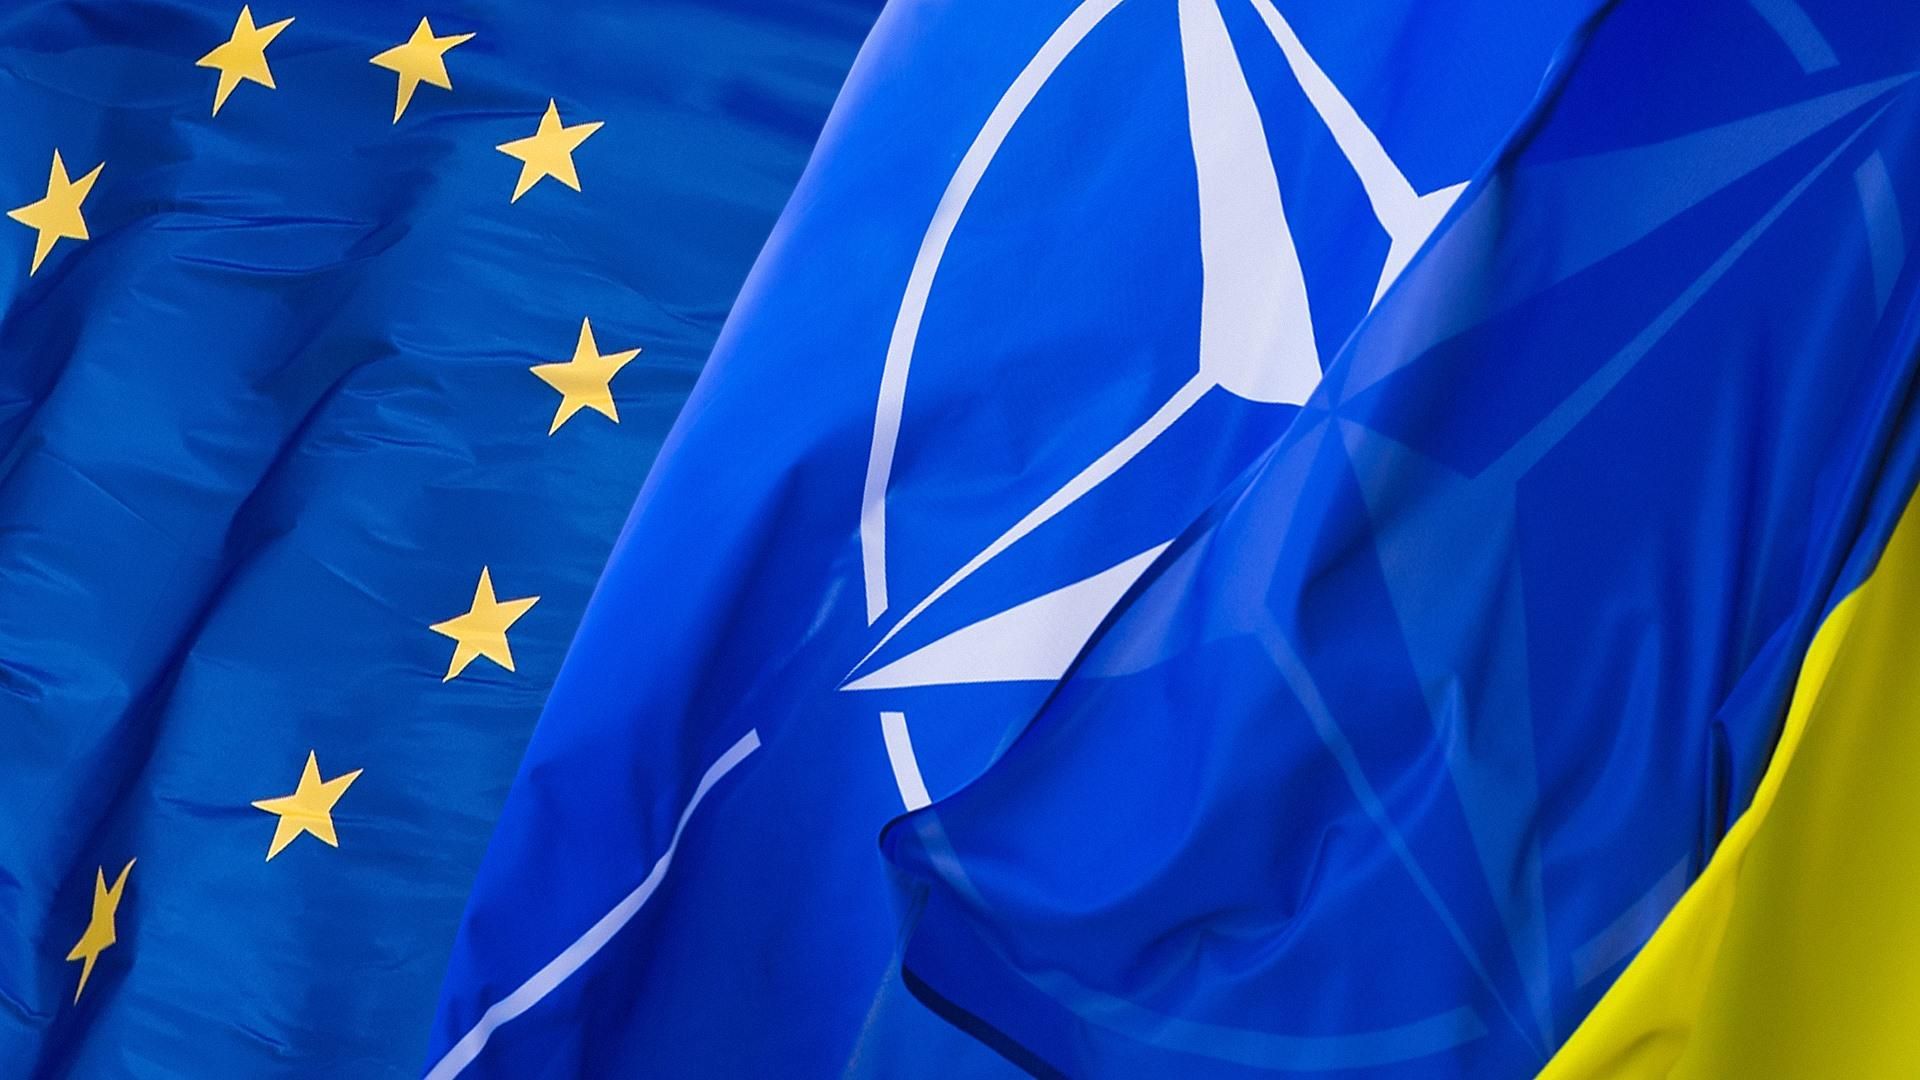 Зміни до Конституції України курсу в ЄС і НАТО 2019: рішення Ради